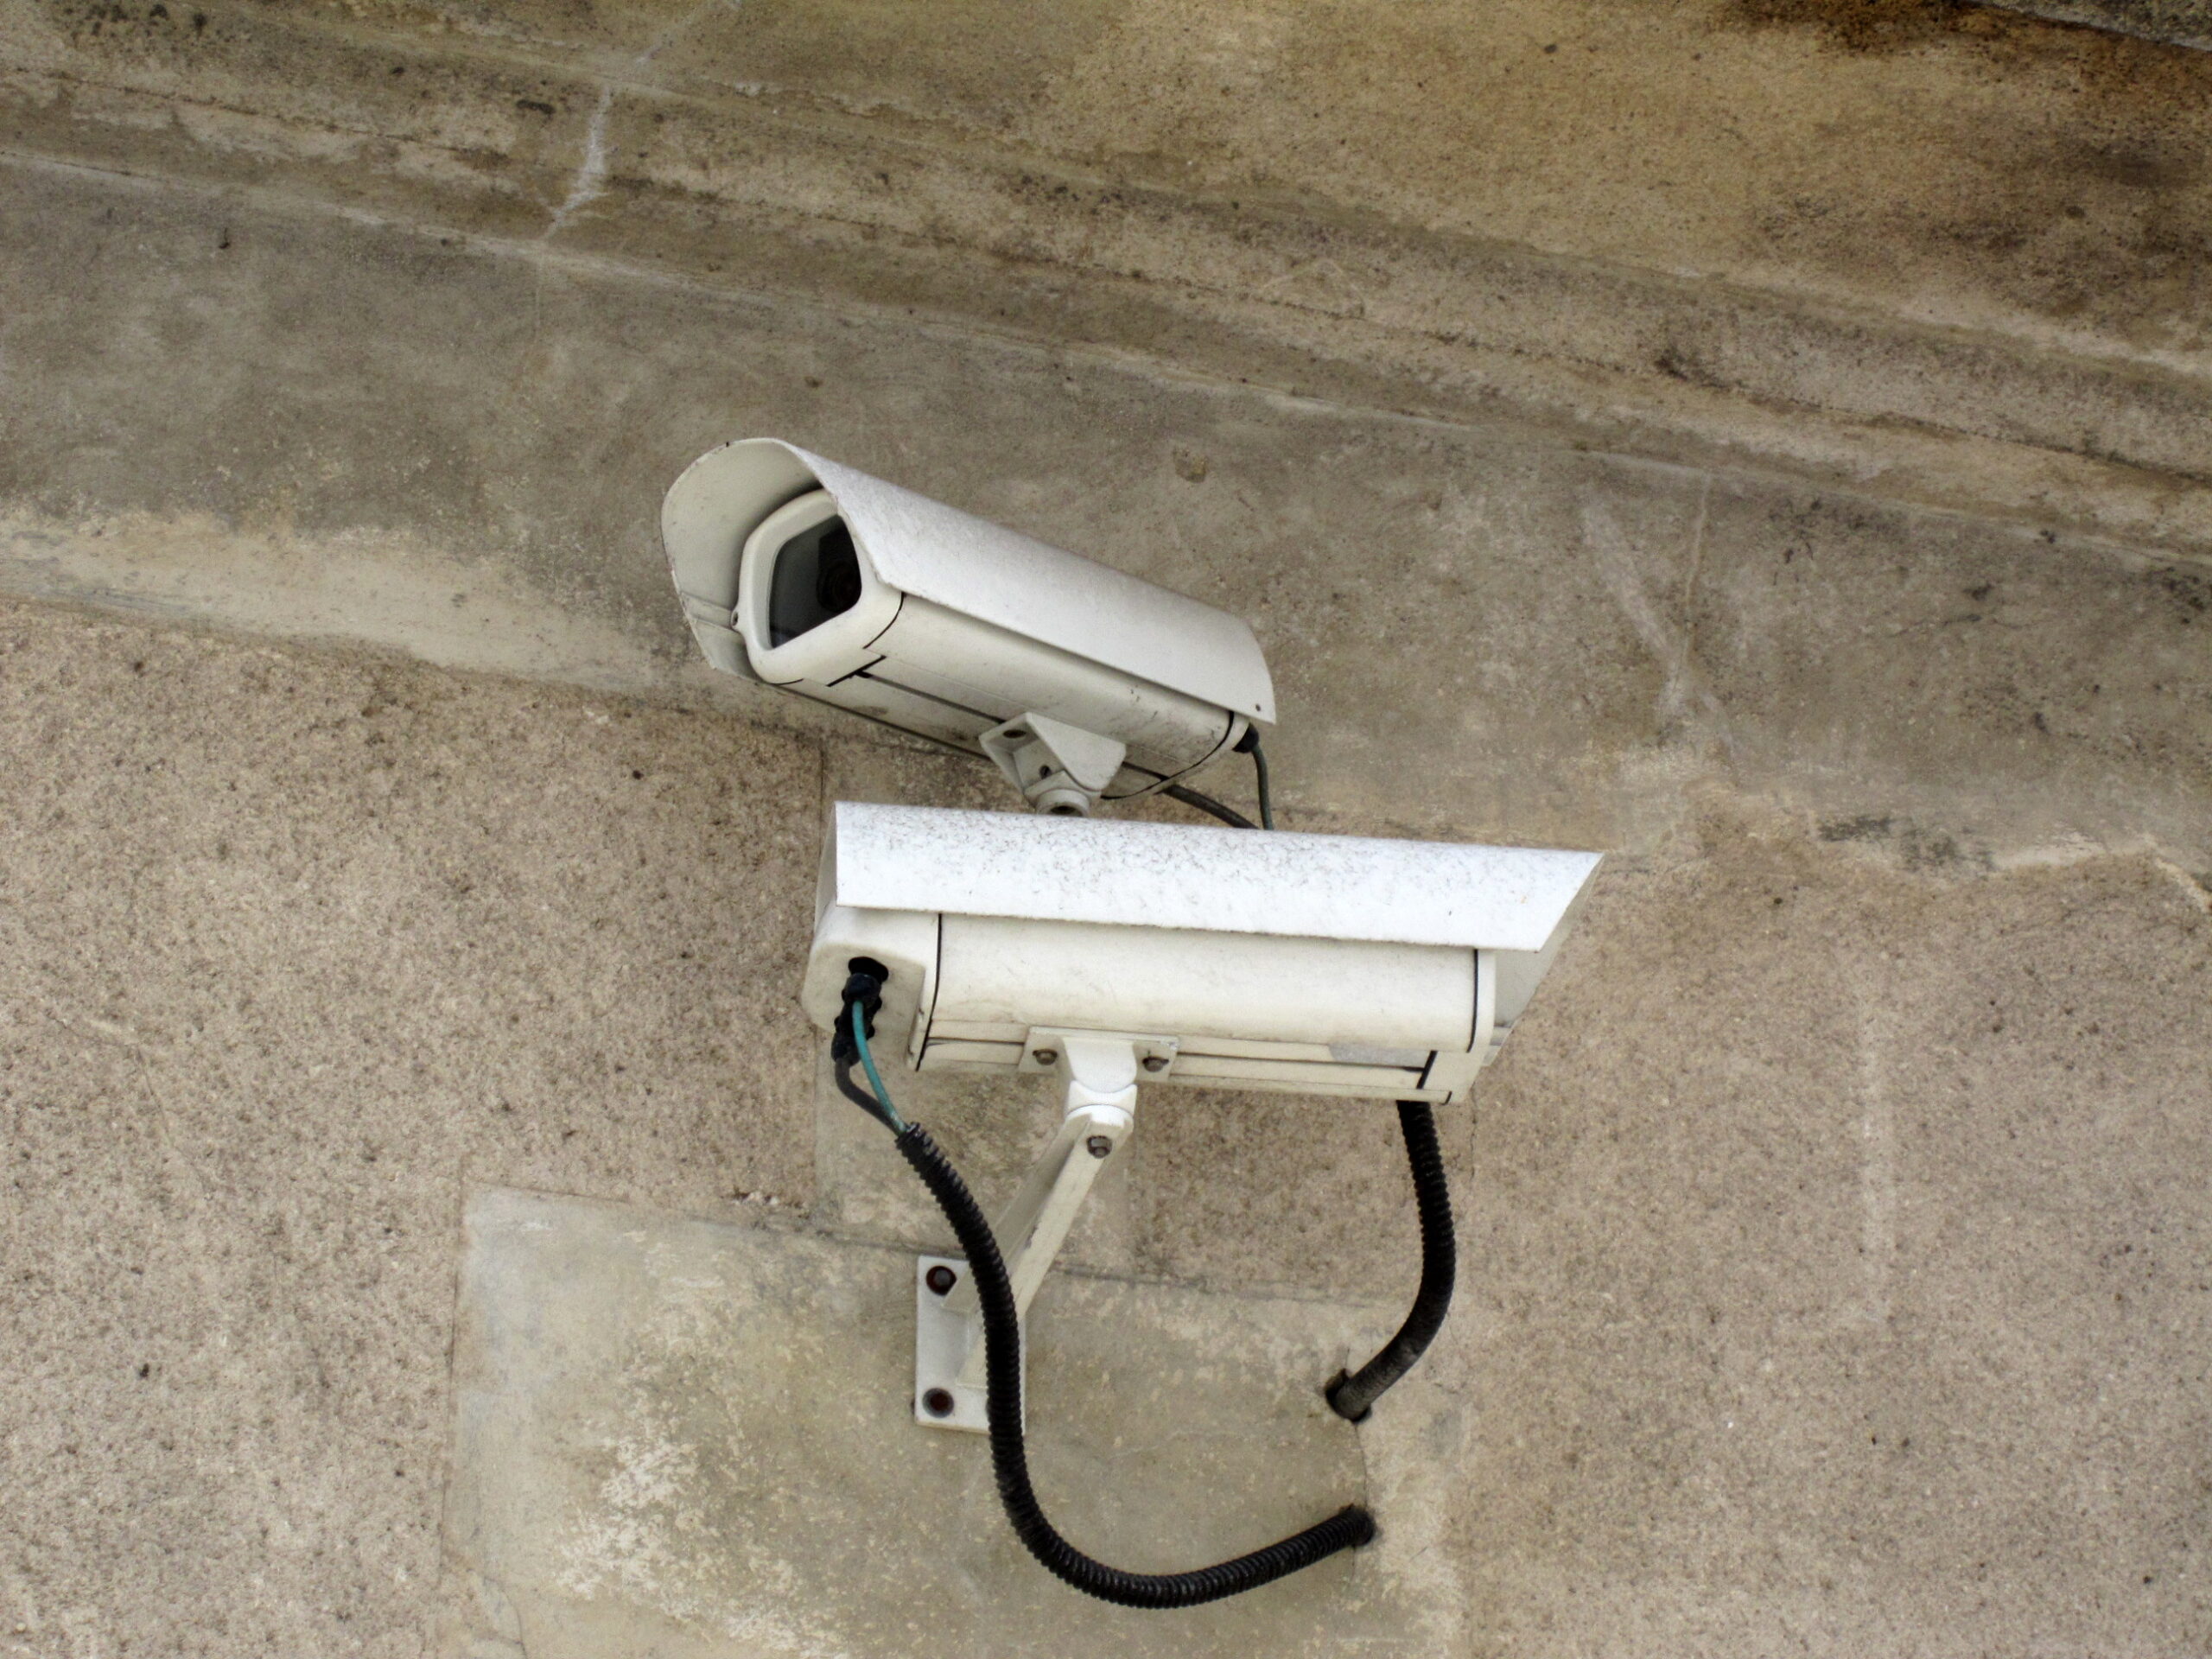 Cameras de surveillance sur la voie publique scaled Jallale.net l'info dernière minute !